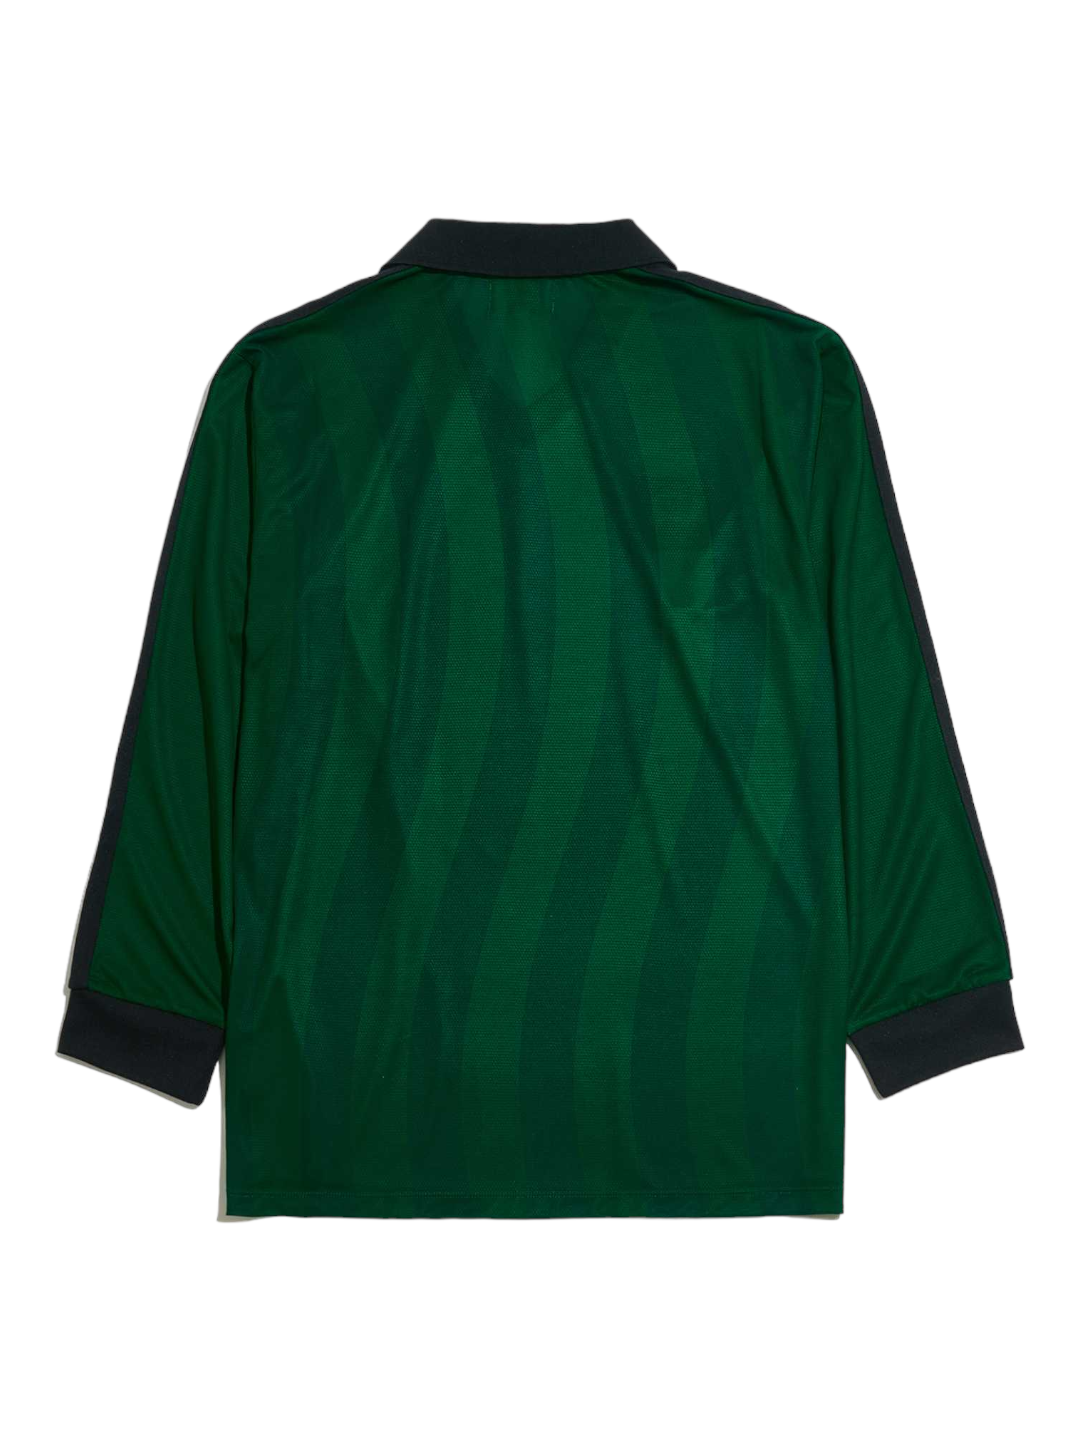 Long-Sleeve Football Jersey (Green)